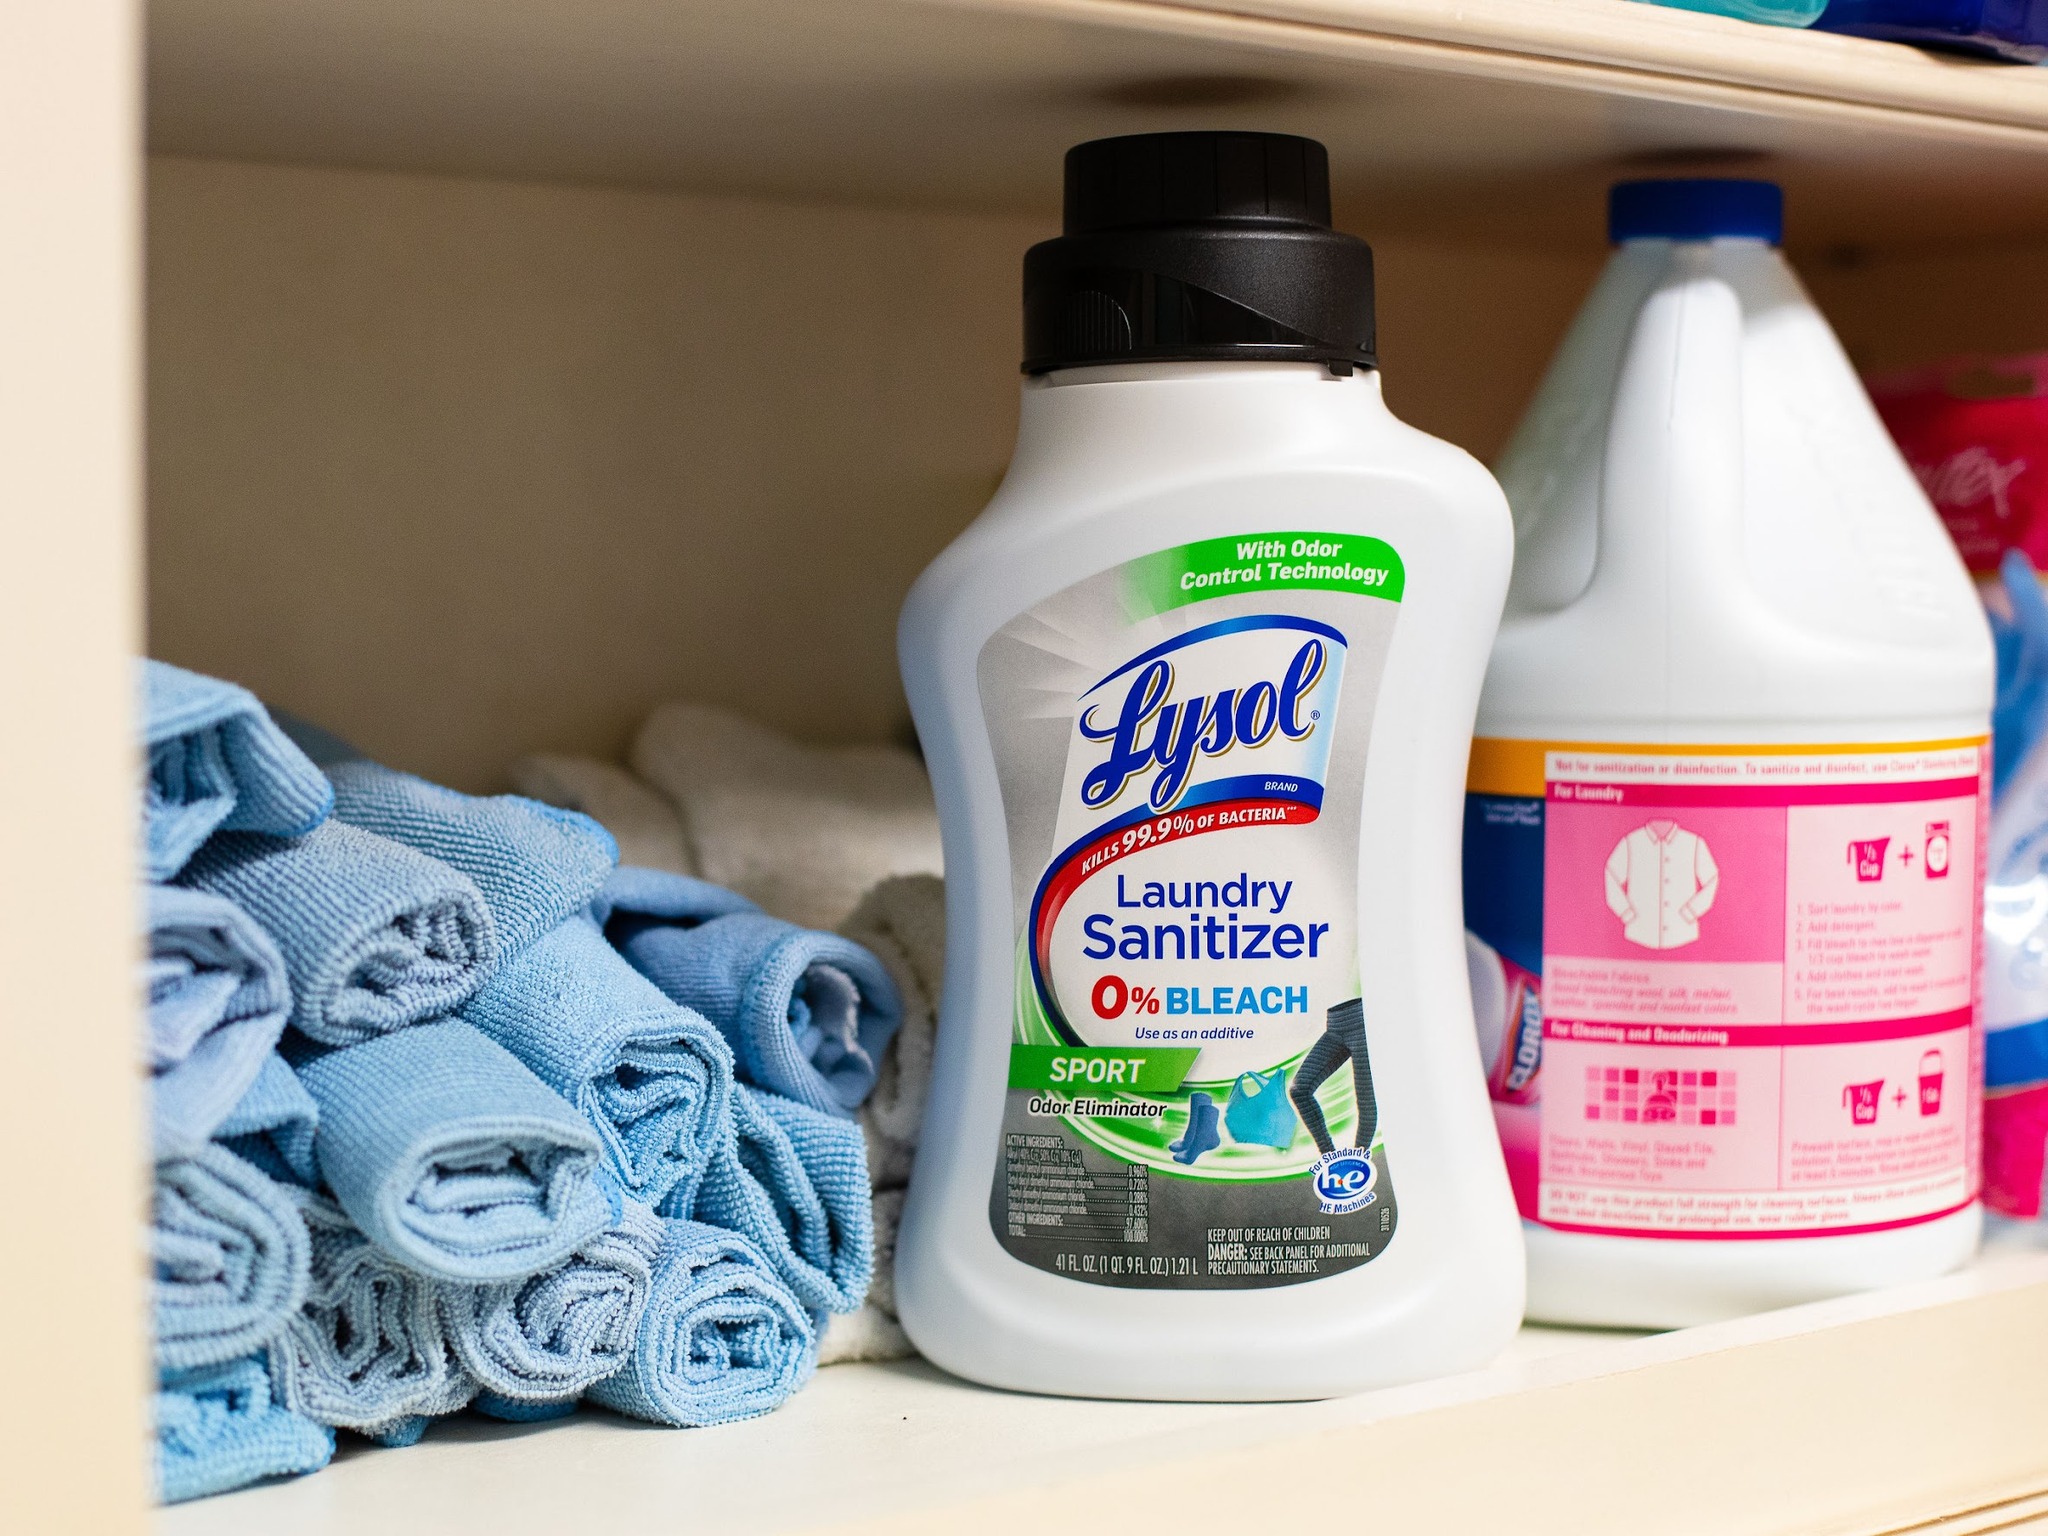 Lysol Laundry Sanitizer Just $4.49 At Publix